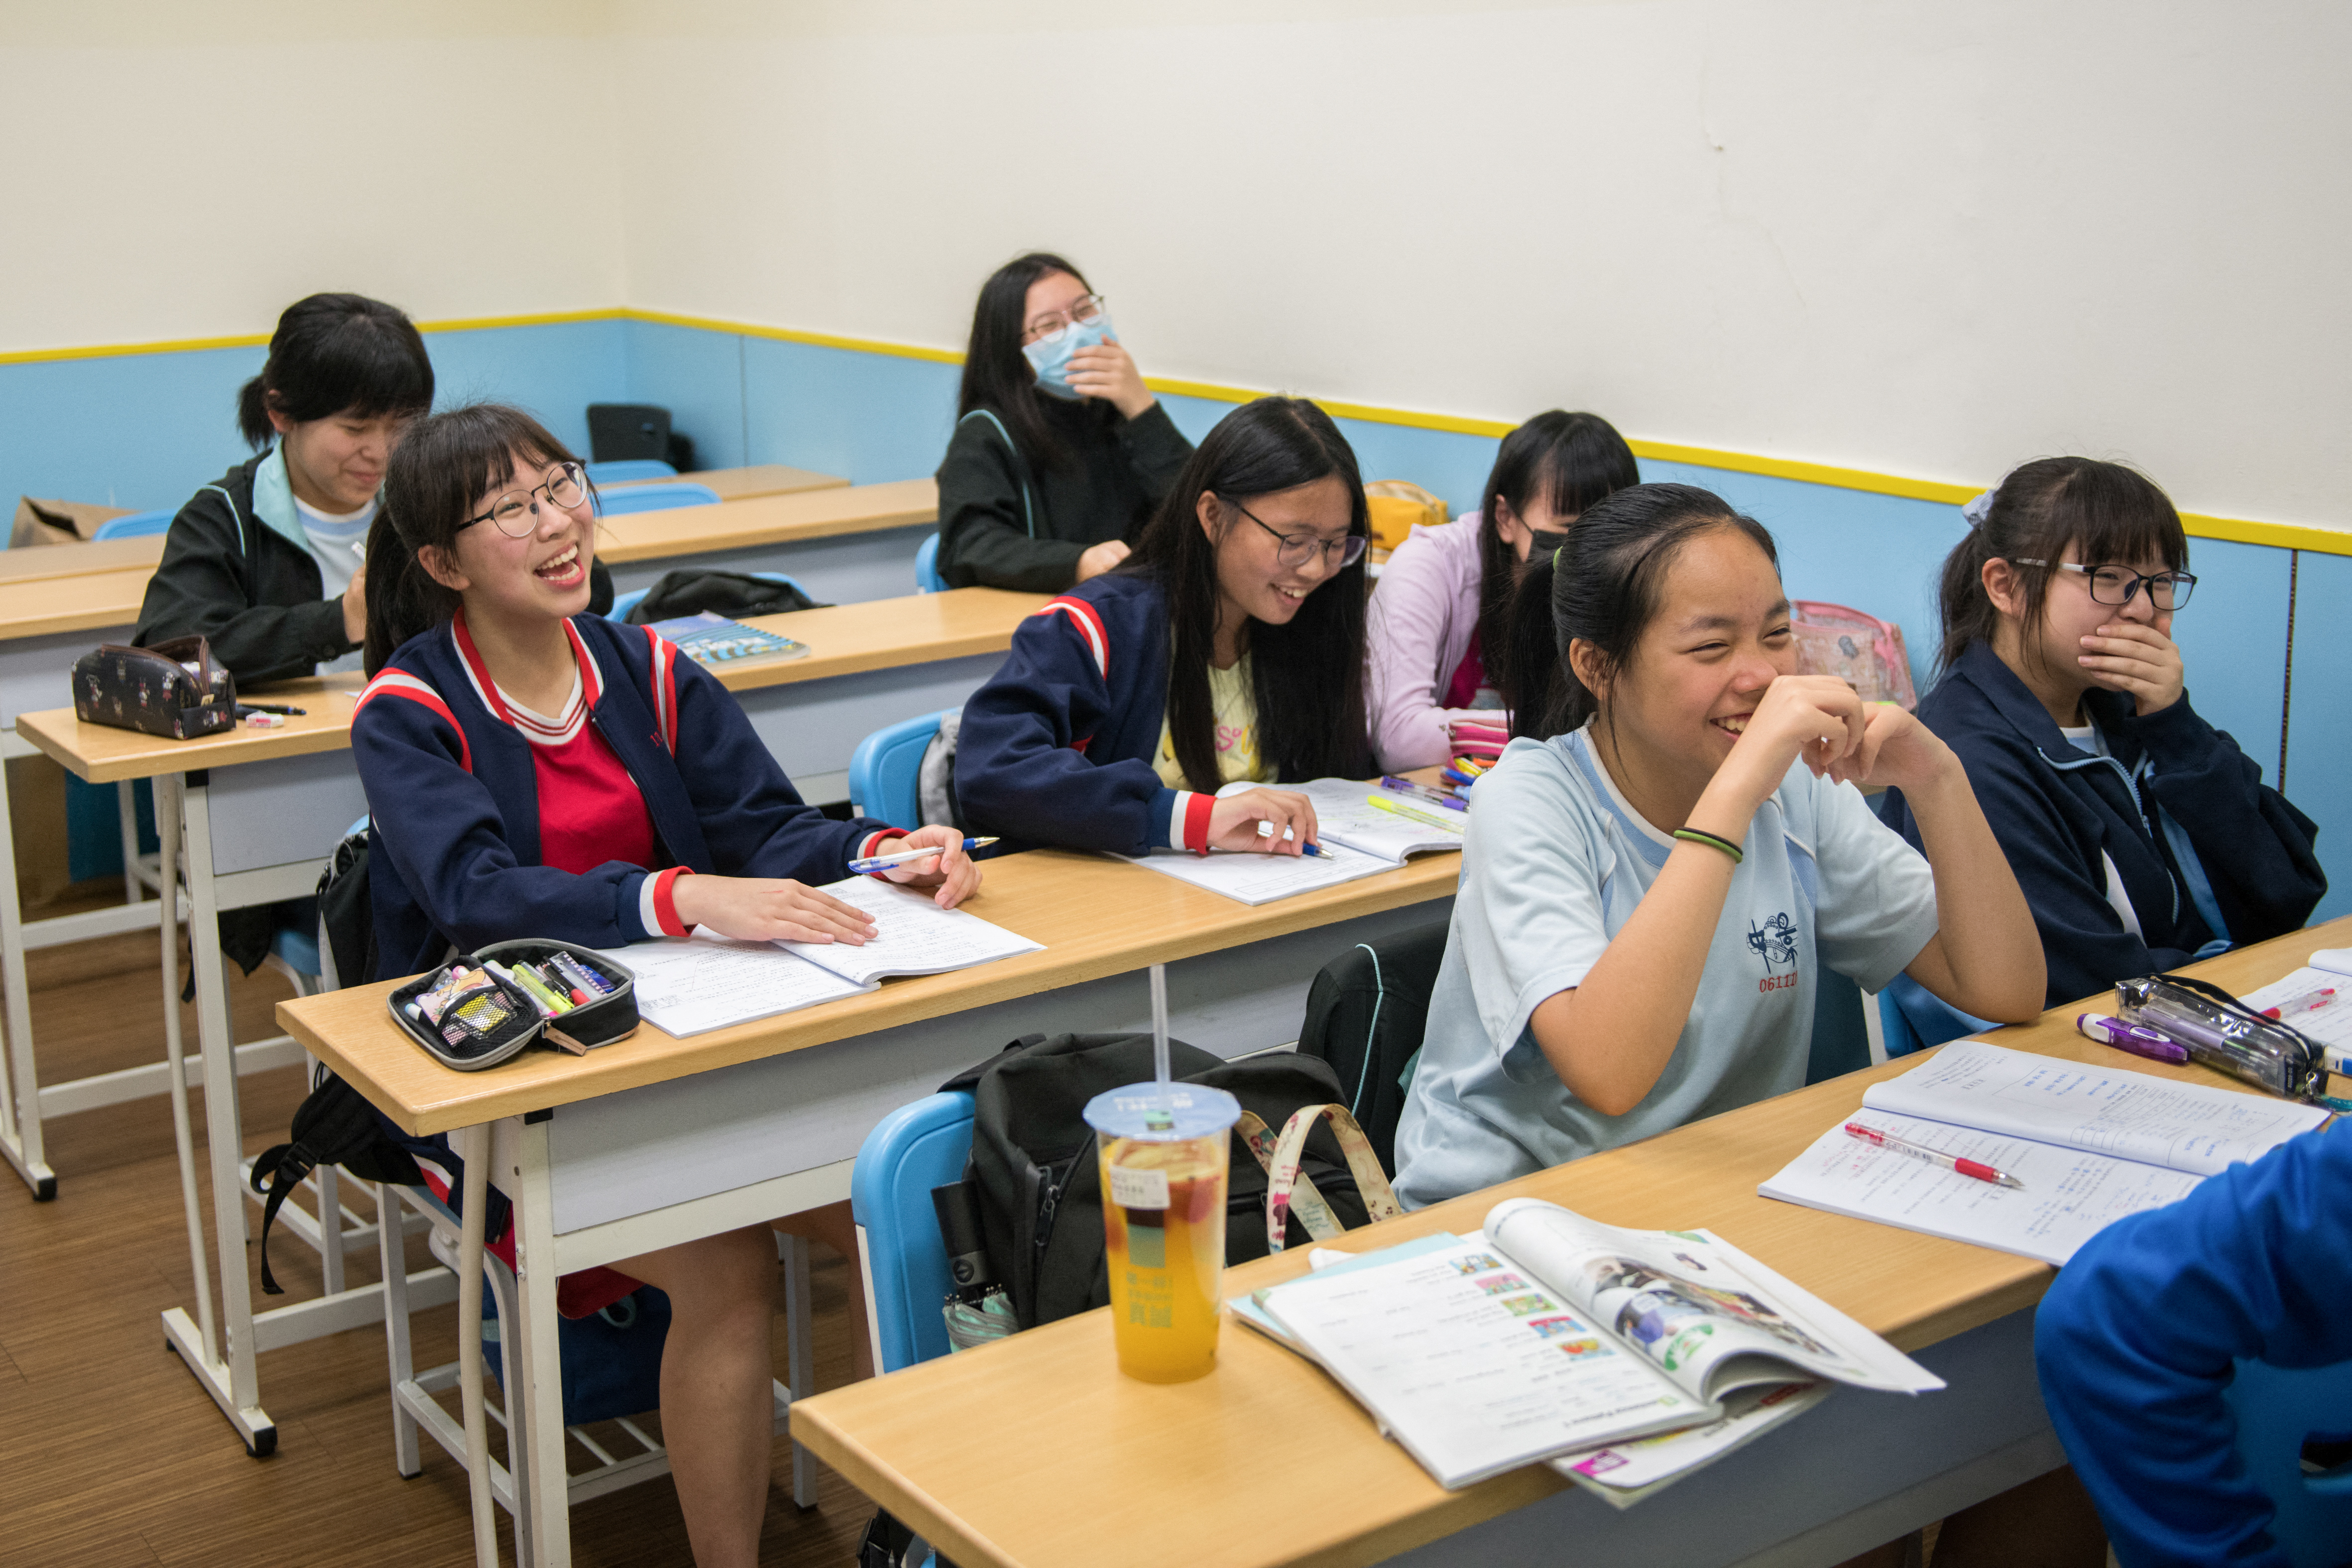 怎么笑得这么开心？在台北一所学校的课堂上的情景。